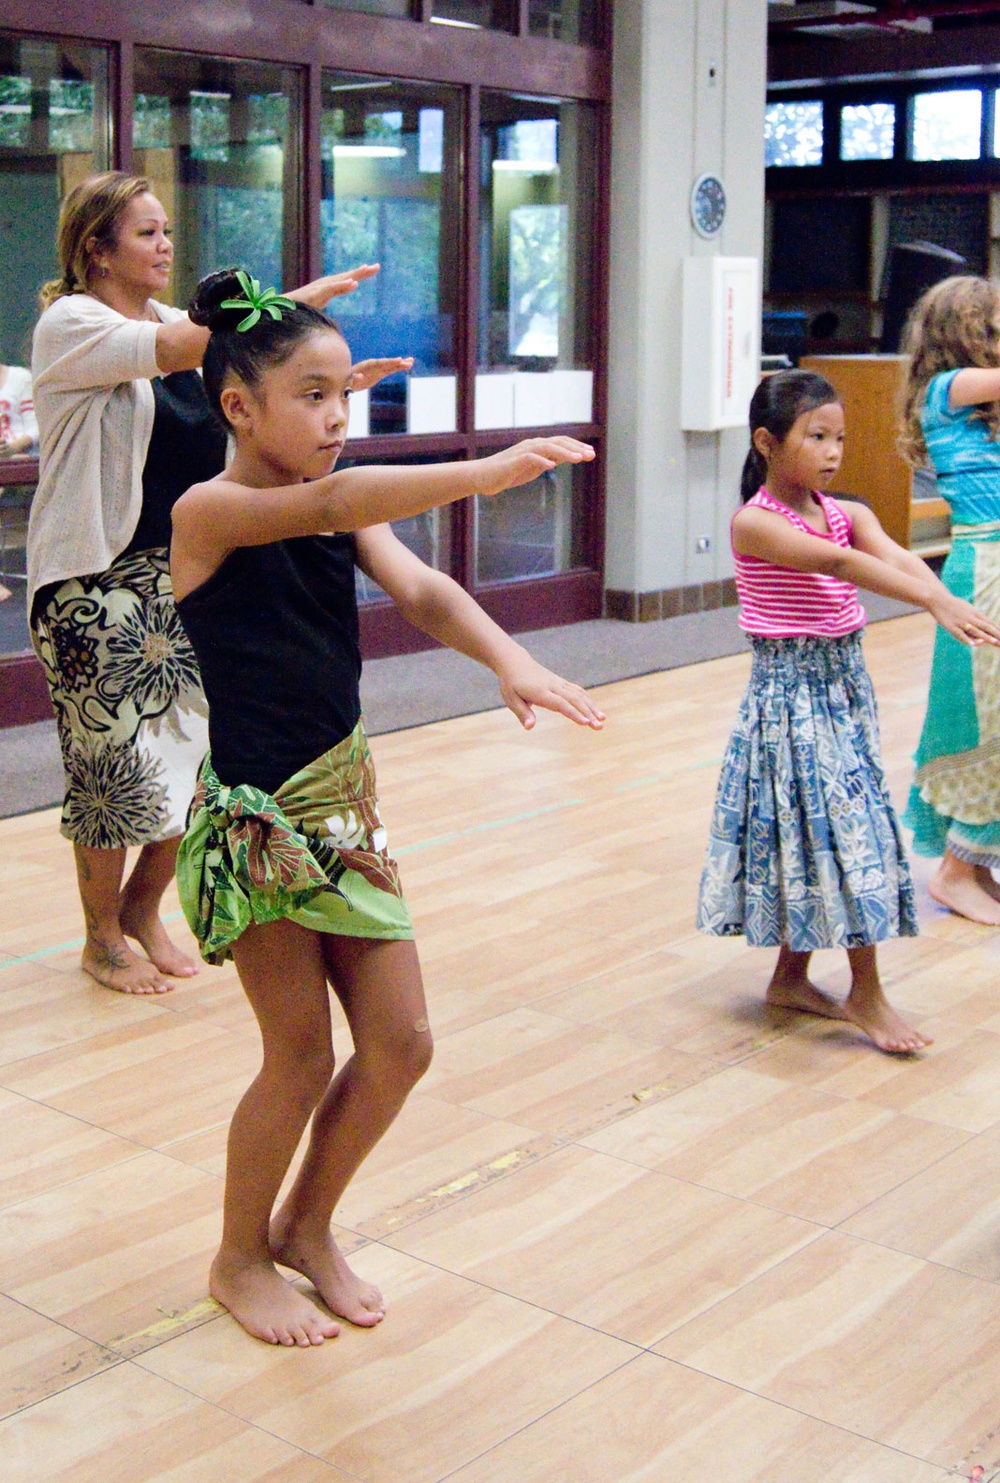 Keiki learn storytelling through hula